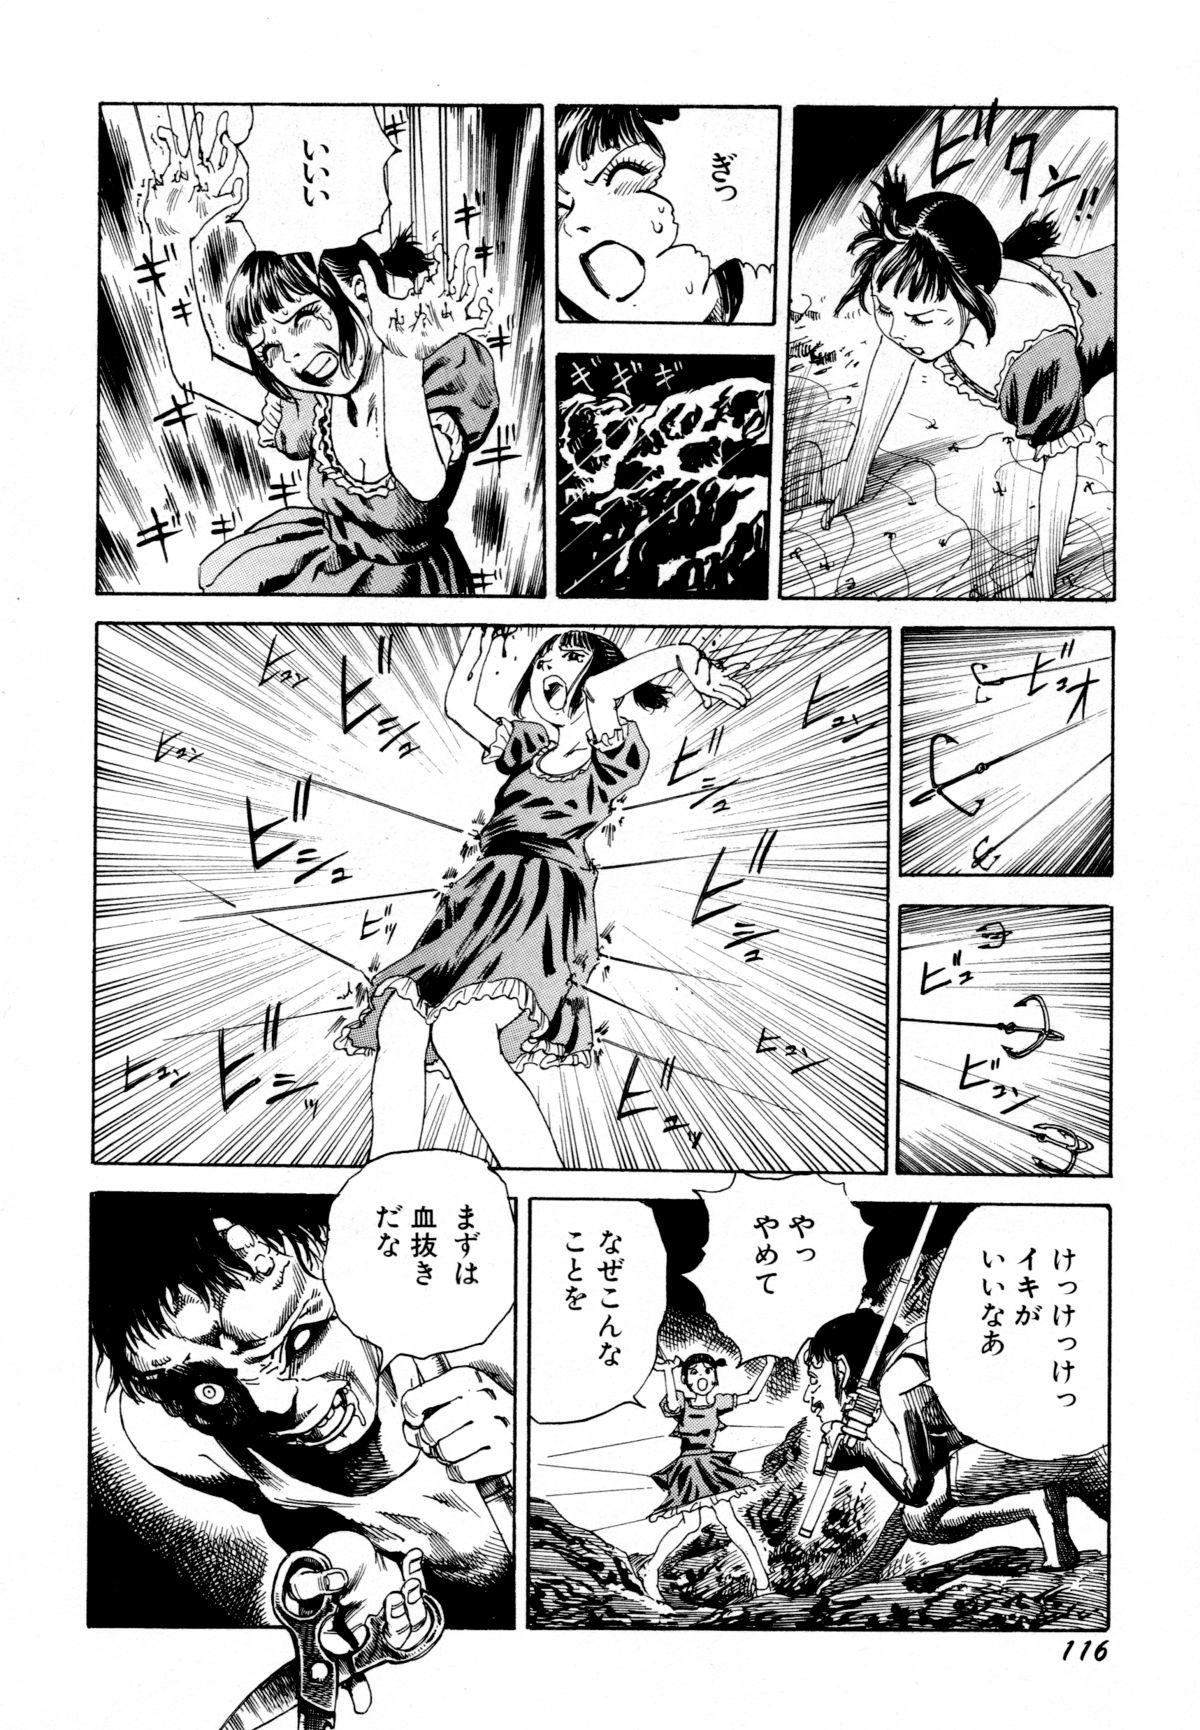 Arijigoku vs Barabara Shoujo - Antlion vs BaraBara Girl 117